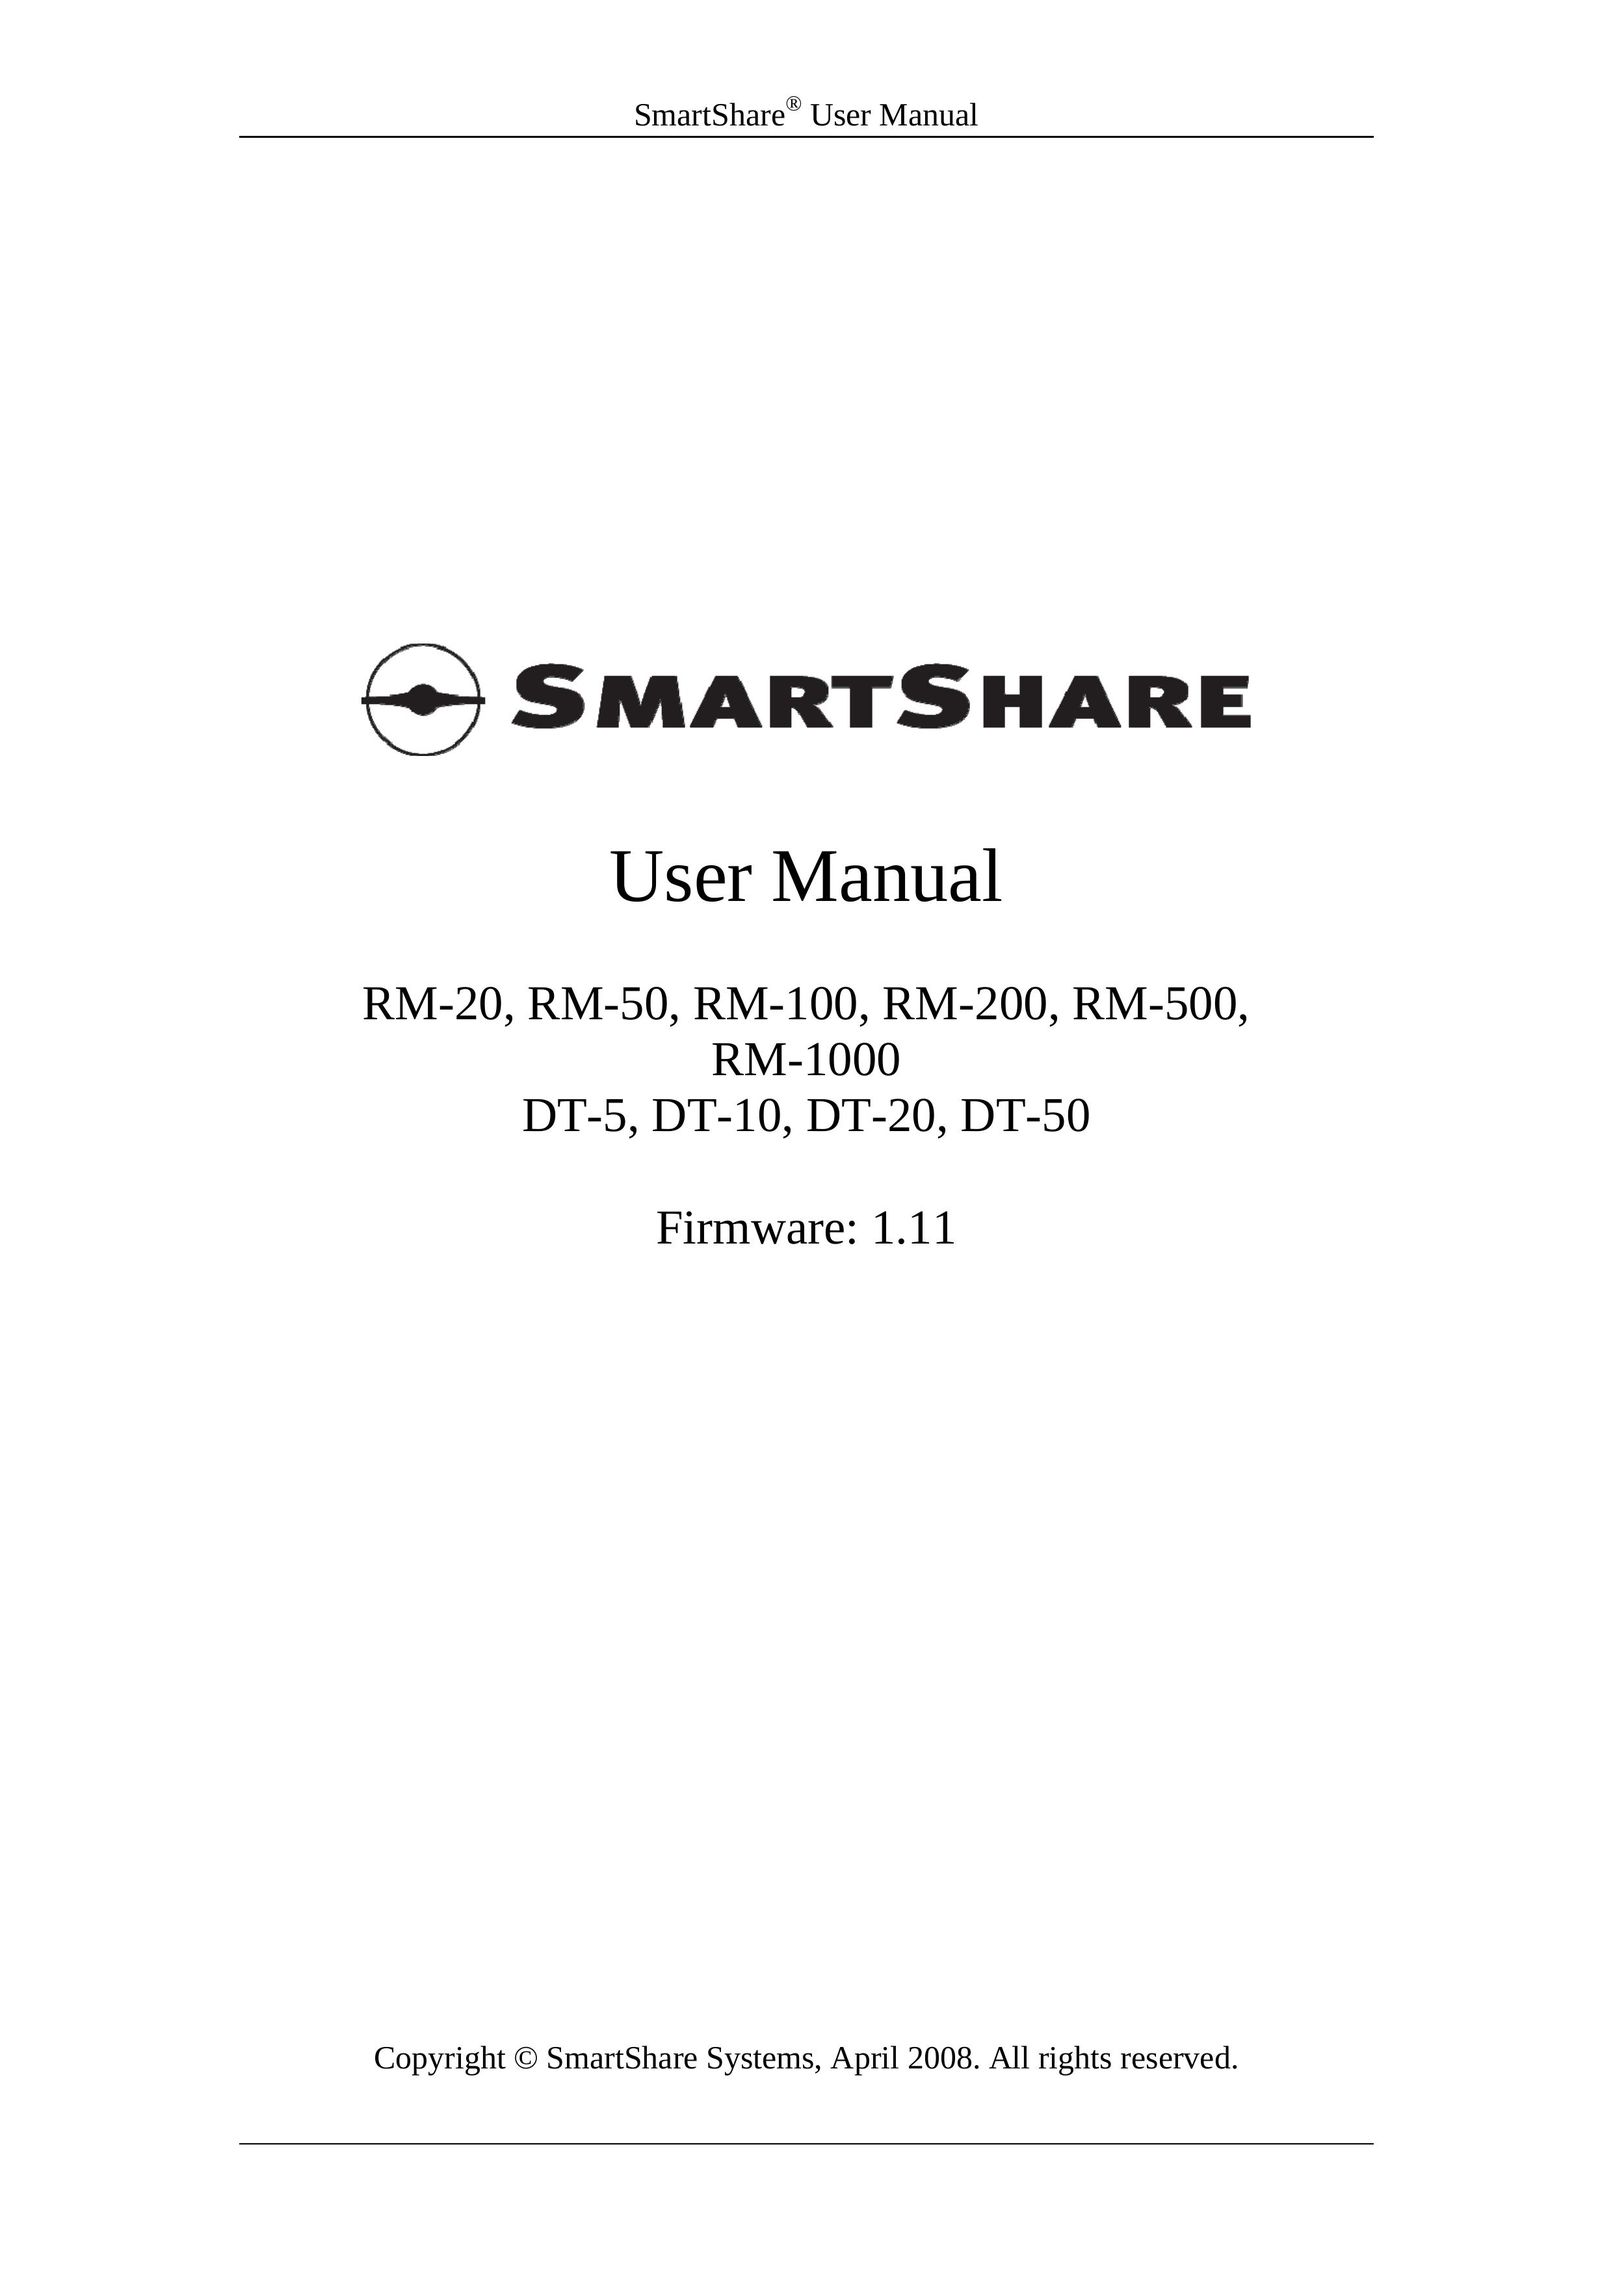 HP (Hewlett-Packard) DT-20 Network Router User Manual